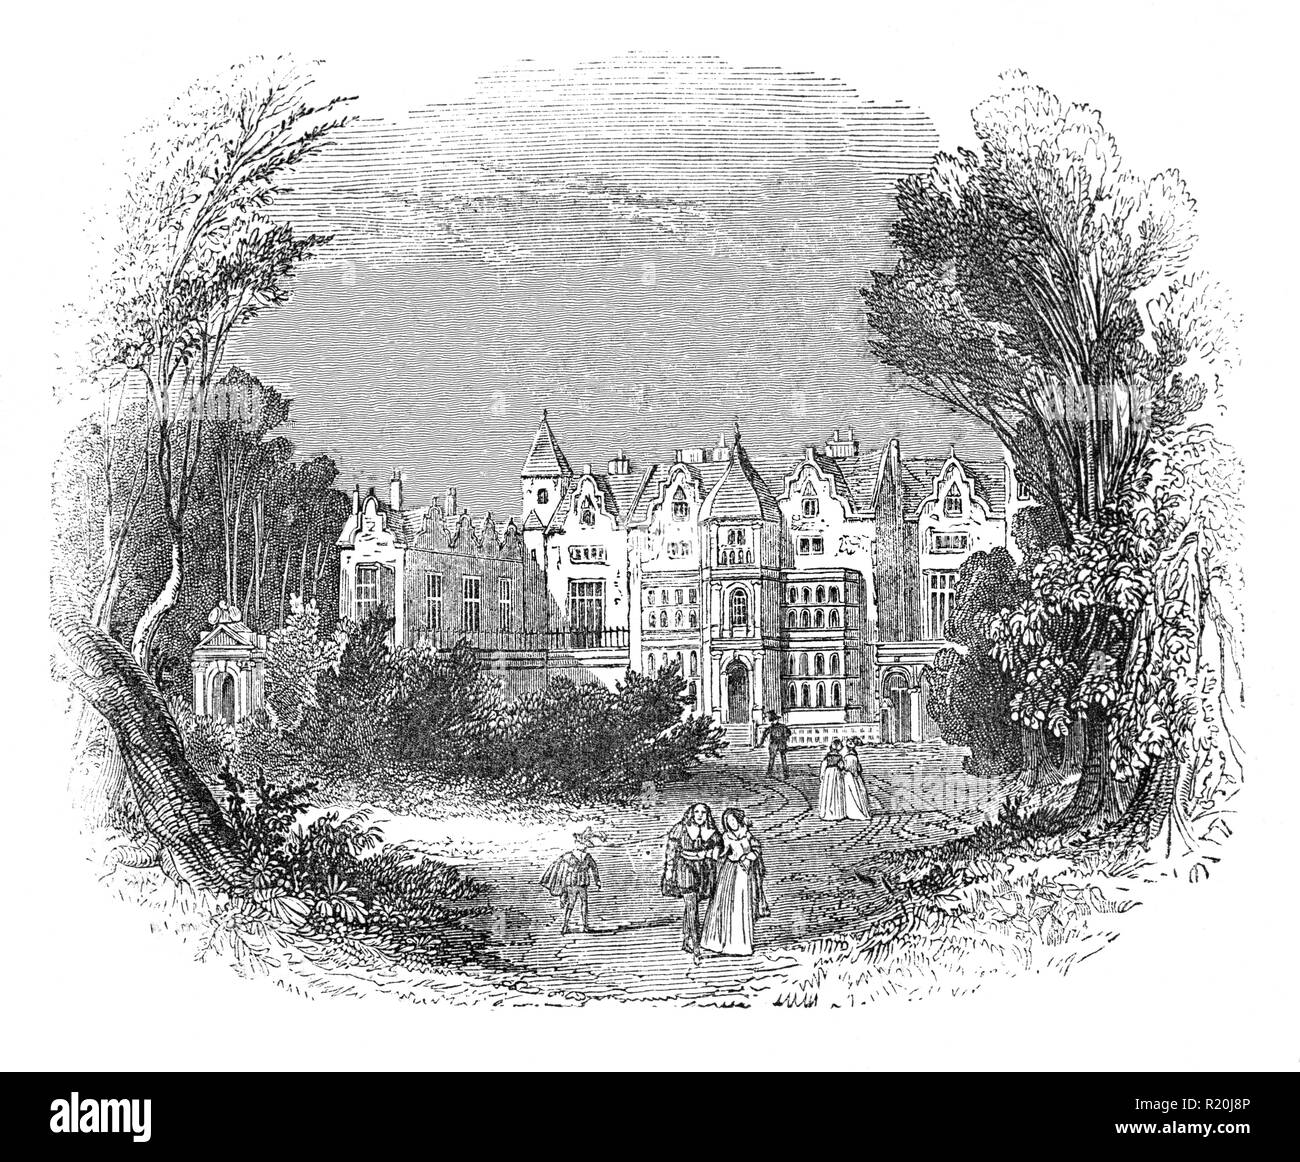 Holland House à l'origine connu comme le château de faire face, a été l'un des premiers pays jacobin maison construite en 1605 par le diplomate Sir Walter faire face comme le manoir de la seigneurie de Kensington, à quelques kilomètres à l'ouest de la ville de Westminster dans la ville de Londres. Situé dans le parc des cerfs connu sous le nom de Holland Park la chambre plus tard adopté par mariage riche, 1er baron de Kensington, 1er comte de Hollande, plus tard à la famille Fox, créé baron Holland en 1763, en vertu de la propriété dont il devient un lieu de rassemblement pour les Whigs au 19e siècle. Il a été en grande partie détruit par la bombe incendiaire allemande pendant le Blitz en 1940 Banque D'Images